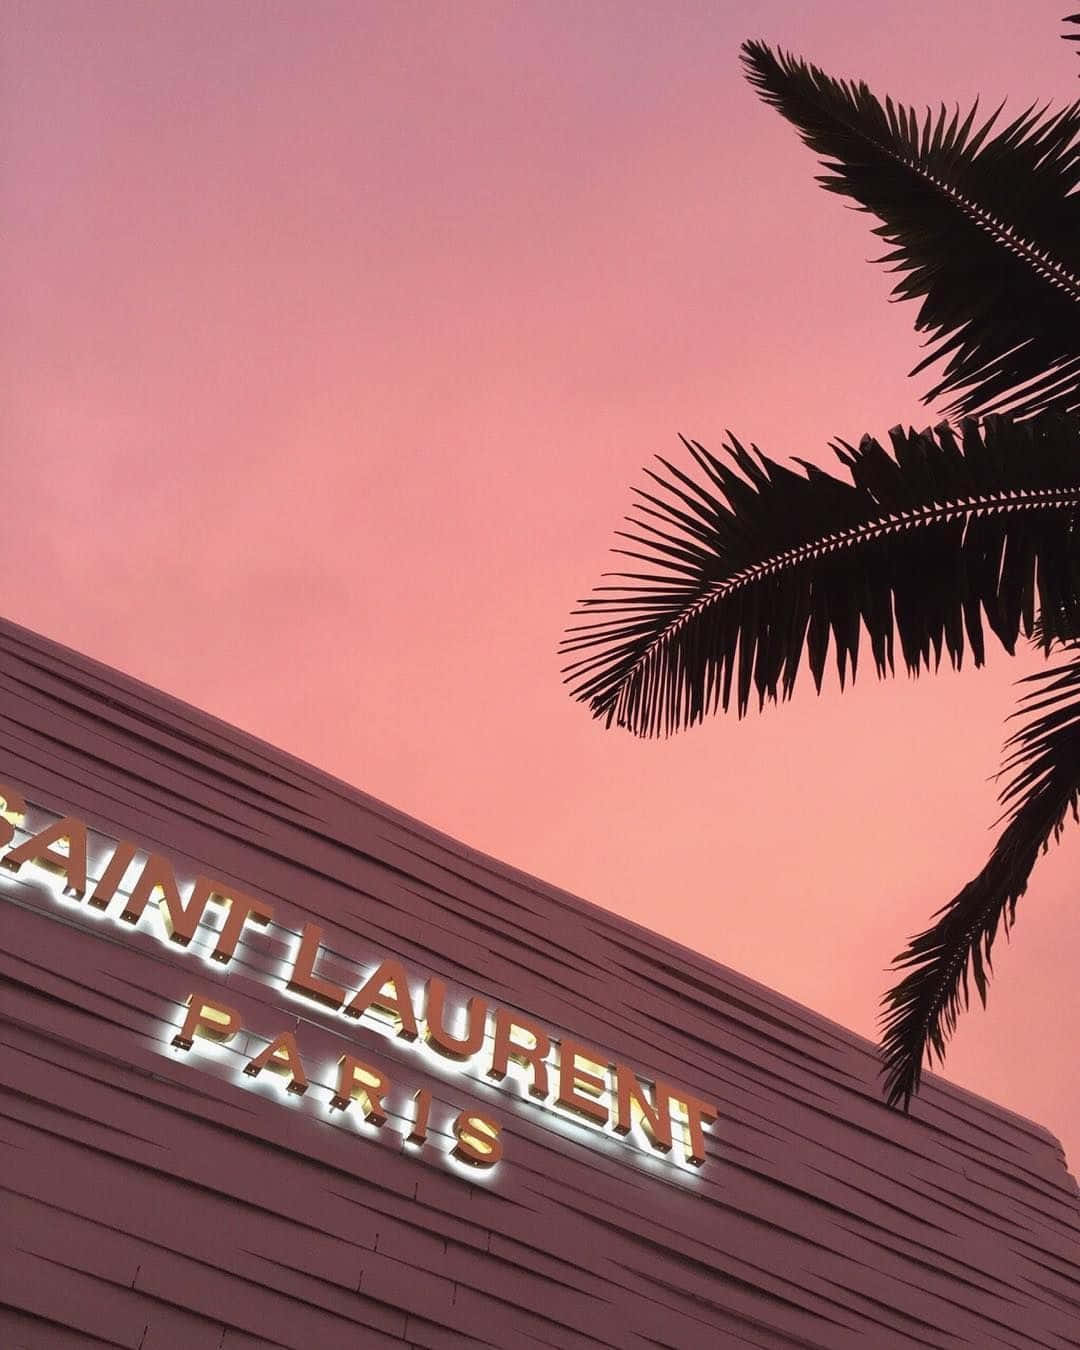 Saint Laurent Paris - A Pink Sky And Palm Trees